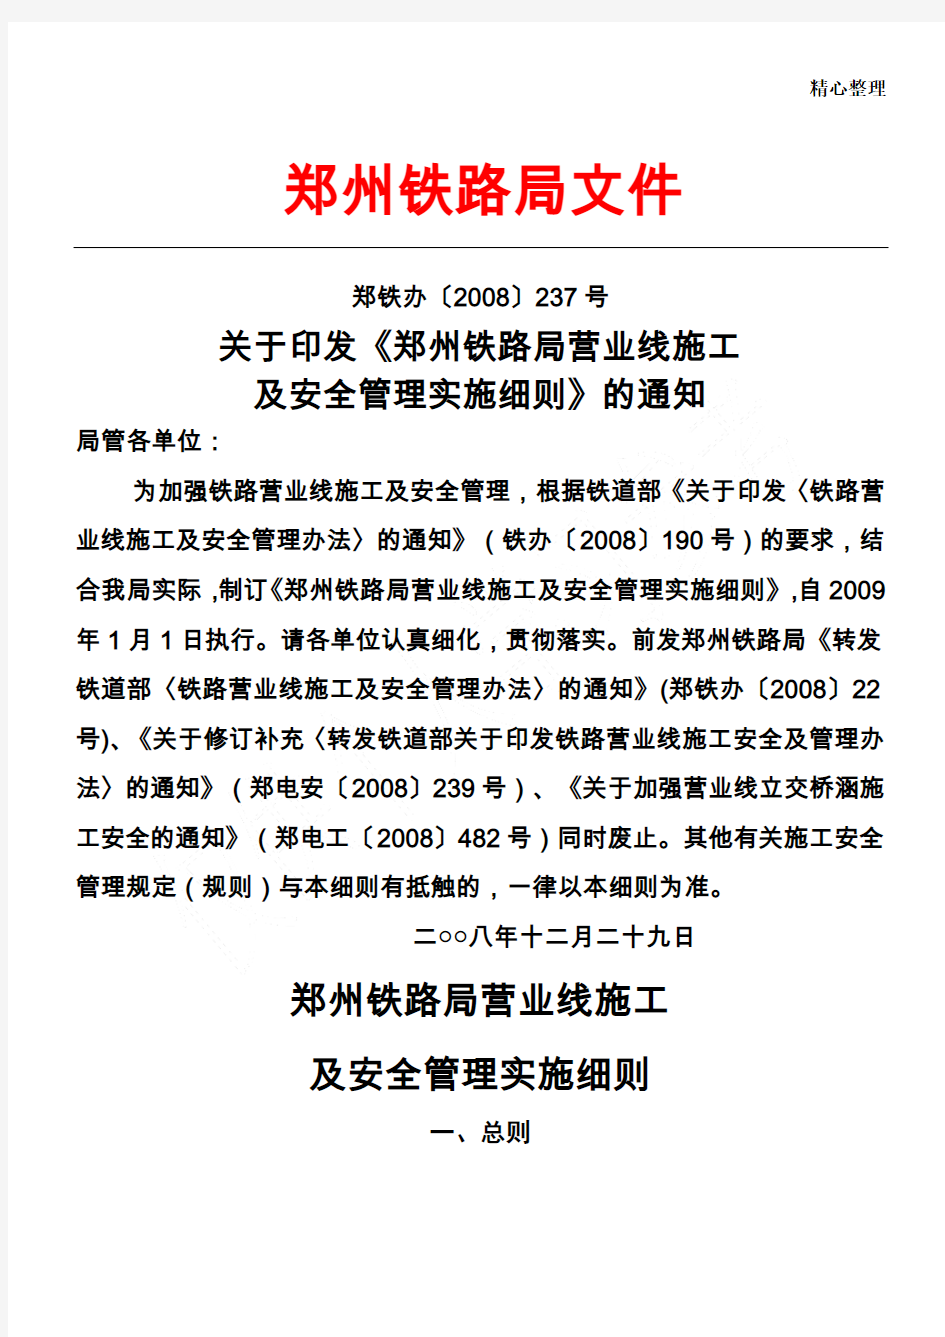 郑州铁路局营业线施工及安全管理实施细则(237号文件)